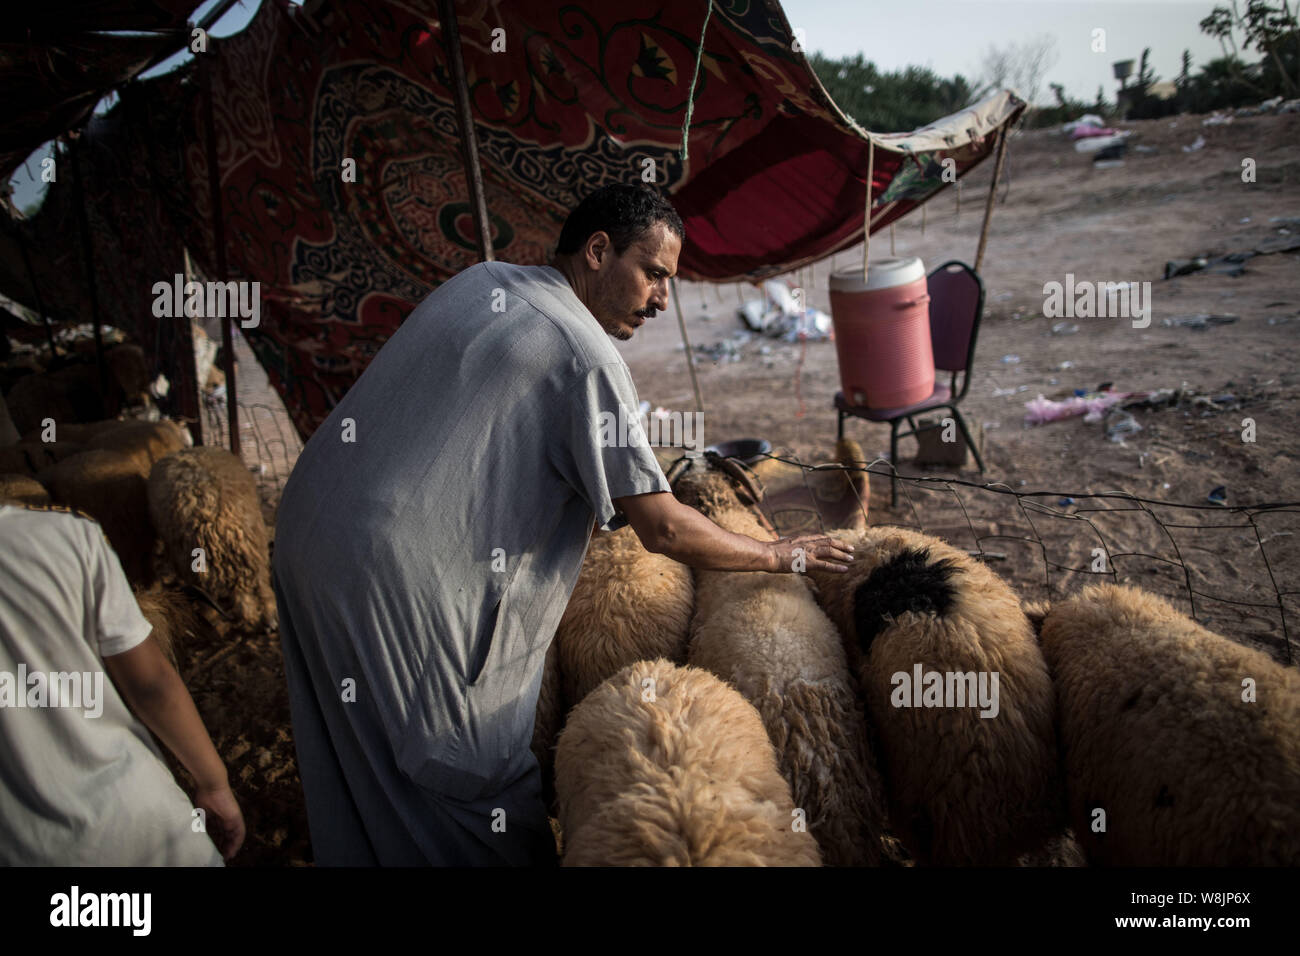 Tripolis, Libyen. 9 Aug, 2019. Ein Mensch wählt ein Schaf mit einem Viehmarkt in Tripolis, Libyen, am Aug 9, 2019. Der libyschen National Animal Health Center am Freitag sagte, dass 350.000 Schafe für das Eid al-Adha, oder das "Festival des Opfers importiert wurden." Quelle: Amru Salahuddien/Xinhua Stockfoto